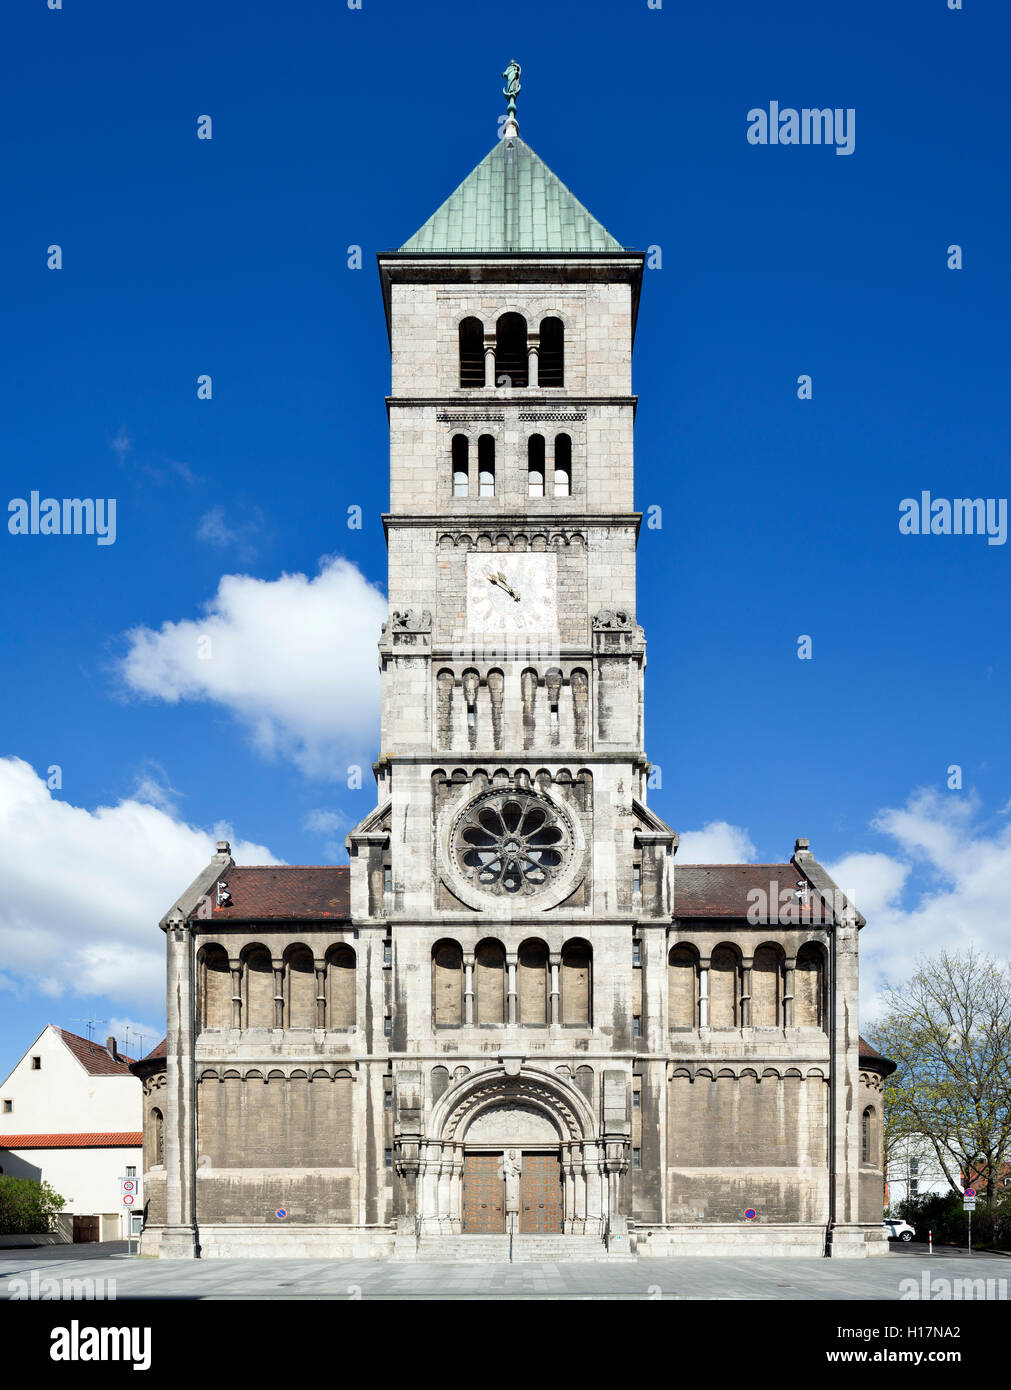 Katholische Pfarrkirche Heilig Geist in Schweinfurt, erbaut 1897-1902 nach Plänen von Anton Leipold. Der Fassadenturm wurde 1911 Stock Photo